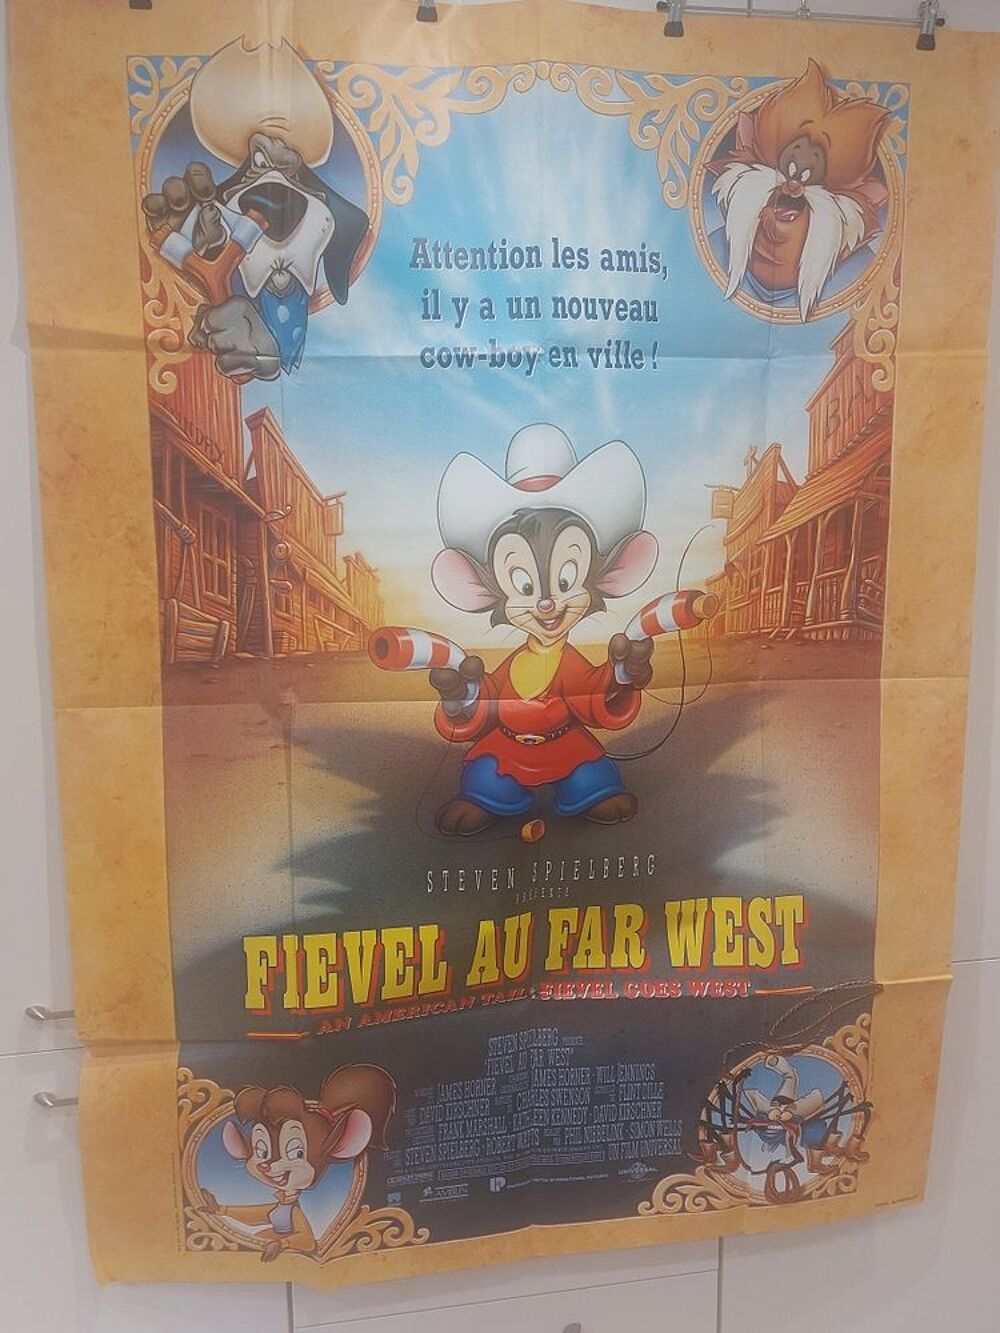 FIEVEL au far west ! Don Bluth affiche cinema animation 
affiche originale d'epoque &nbsp;!!!&nbsp; 